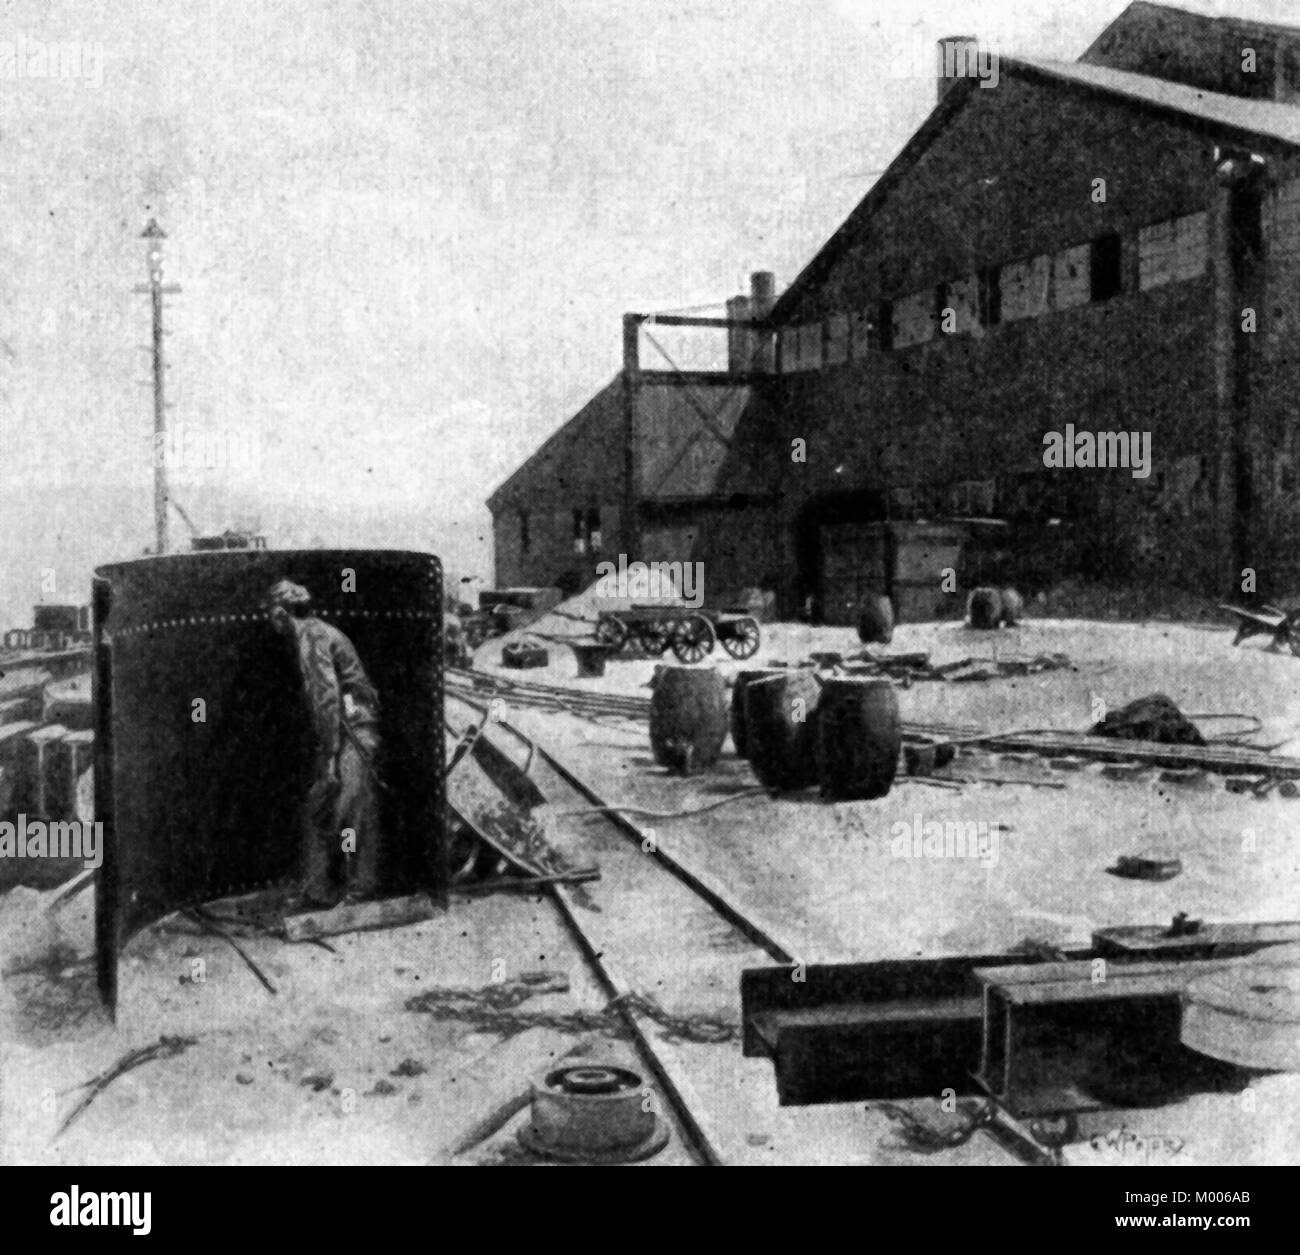 La Carnegie Steel works, montrant le bouclier utilisé par les grévistes quand tirer le canon et regarder les hommes de Pinkerton. Grève de Homestead, 1892 Banque D'Images